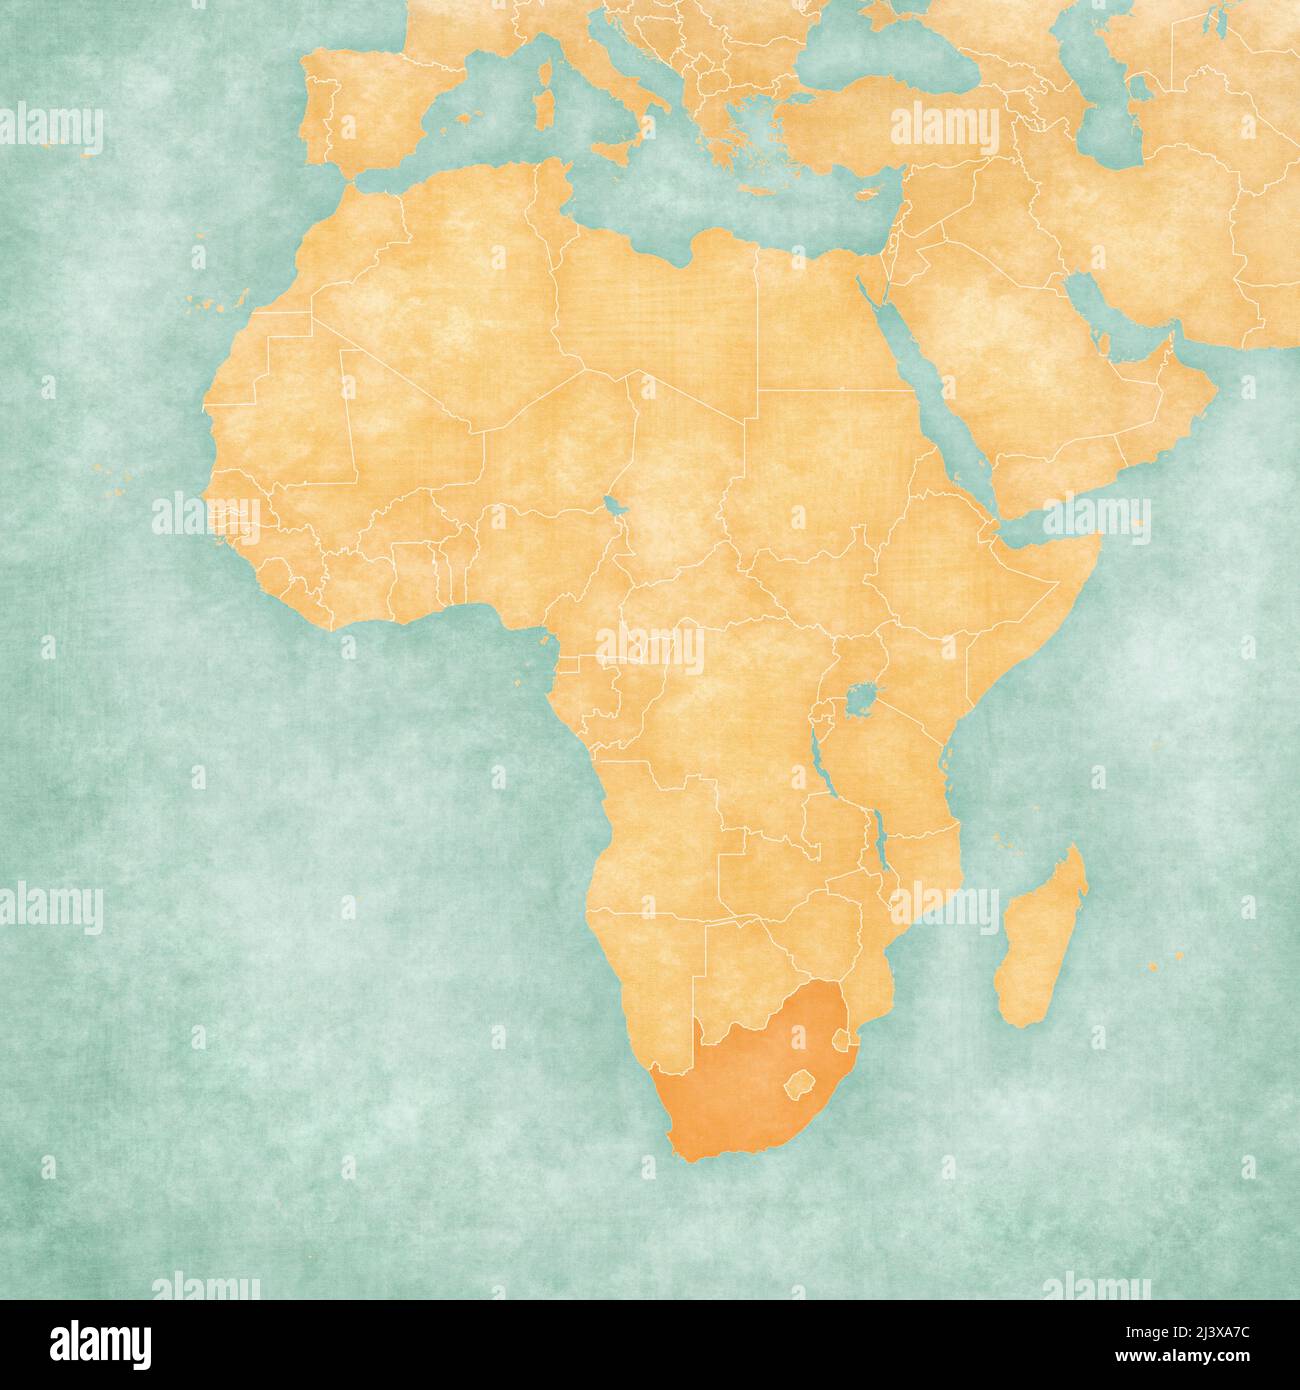 Il Sud Africa sulla mappa dell'Africa in morbido grunge e stile vintage, come carta vecchia con pittura acquerello. Foto Stock